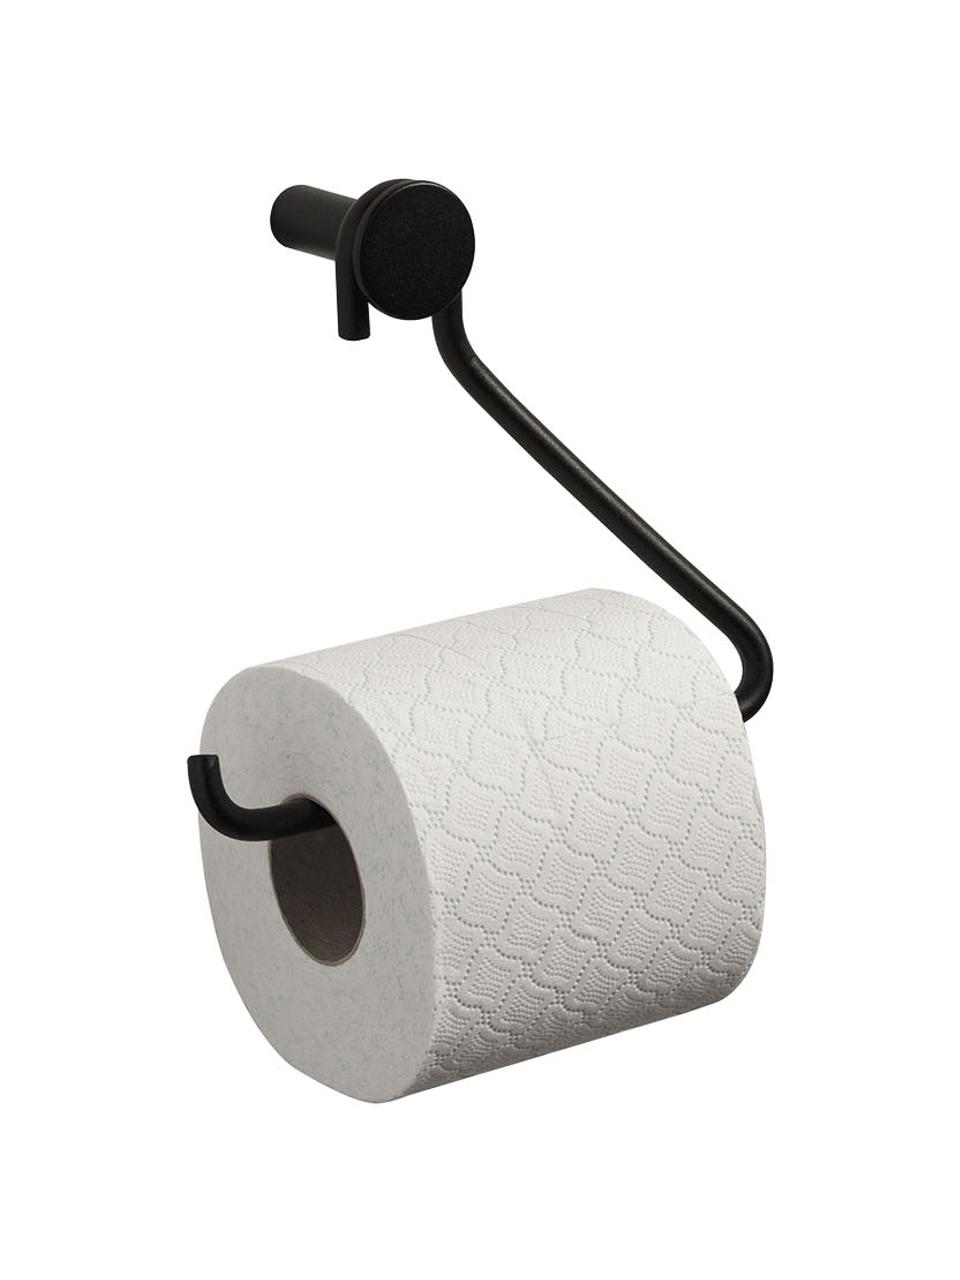 Authentics - Kali Porte-rouleau de papier toilette